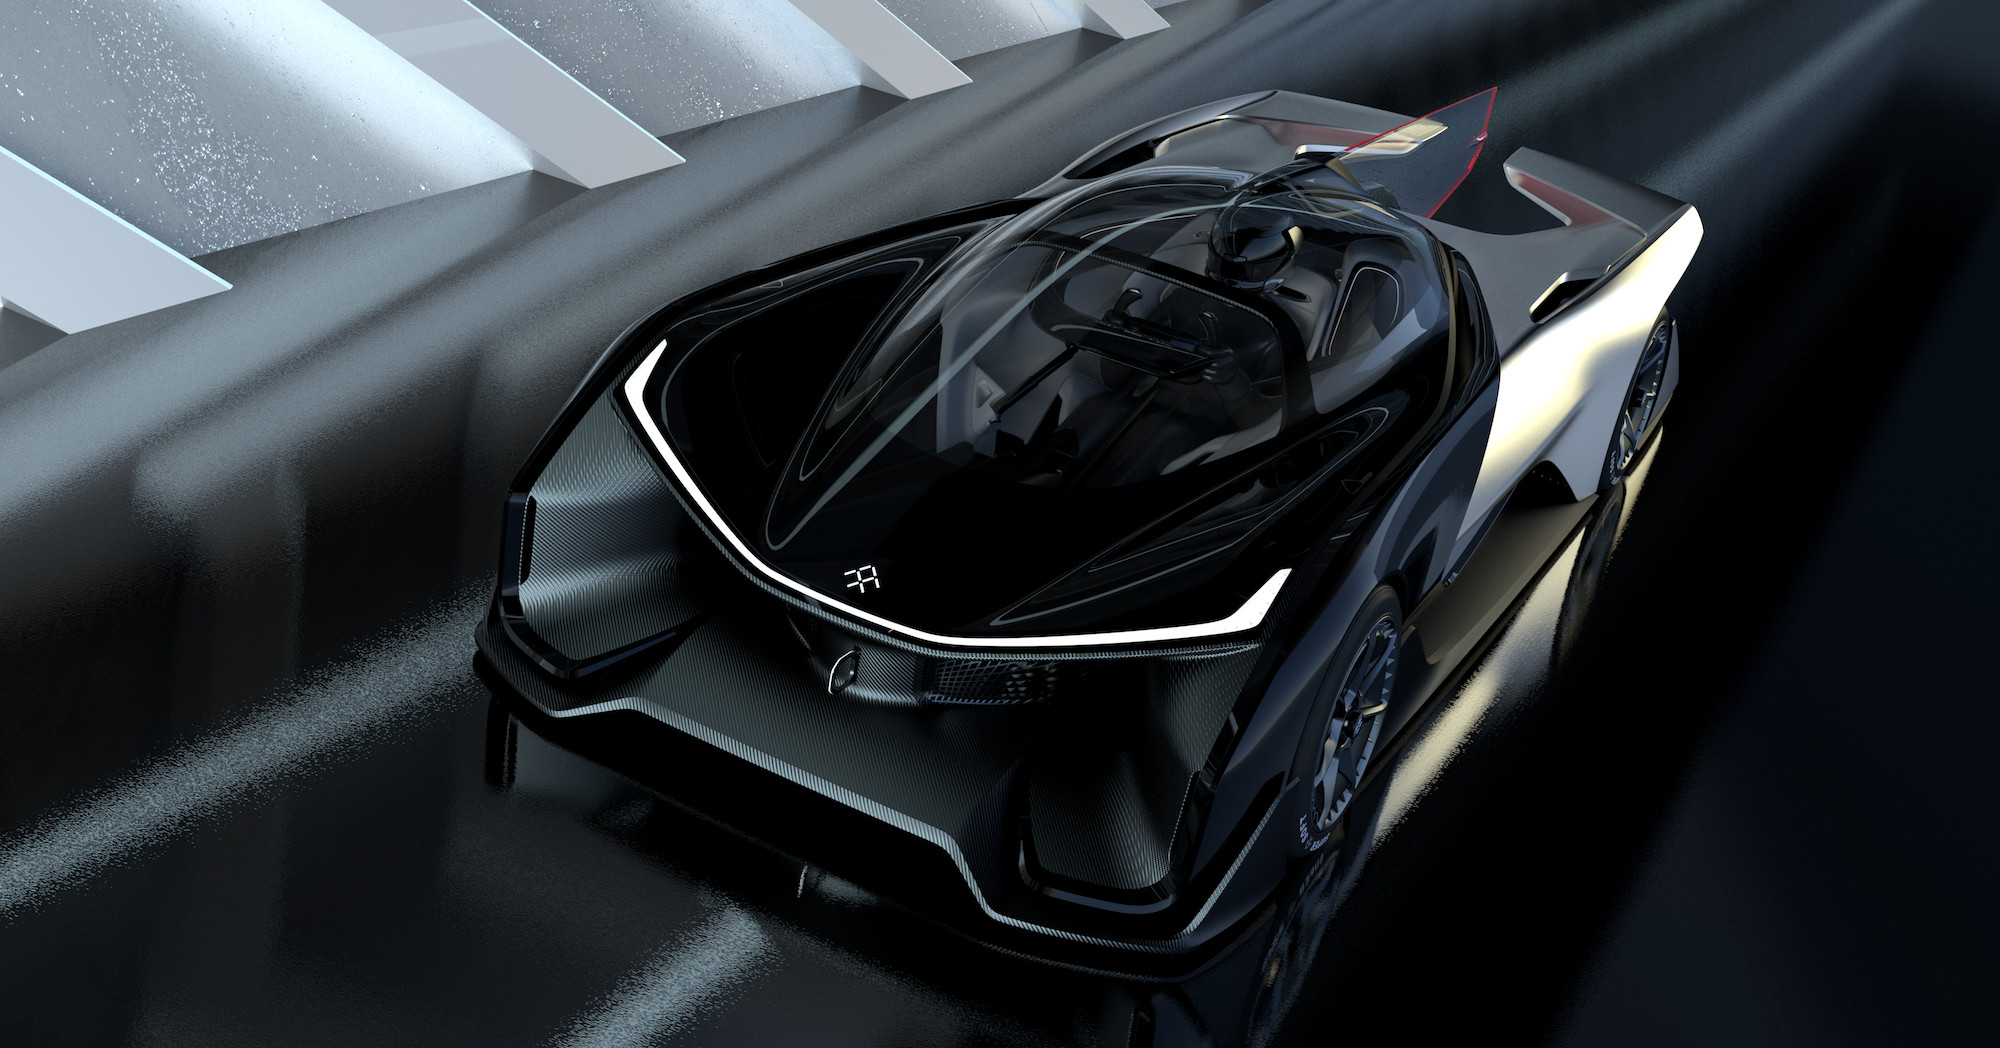 faraday future ffzero1 concept car announced photos ces 2016